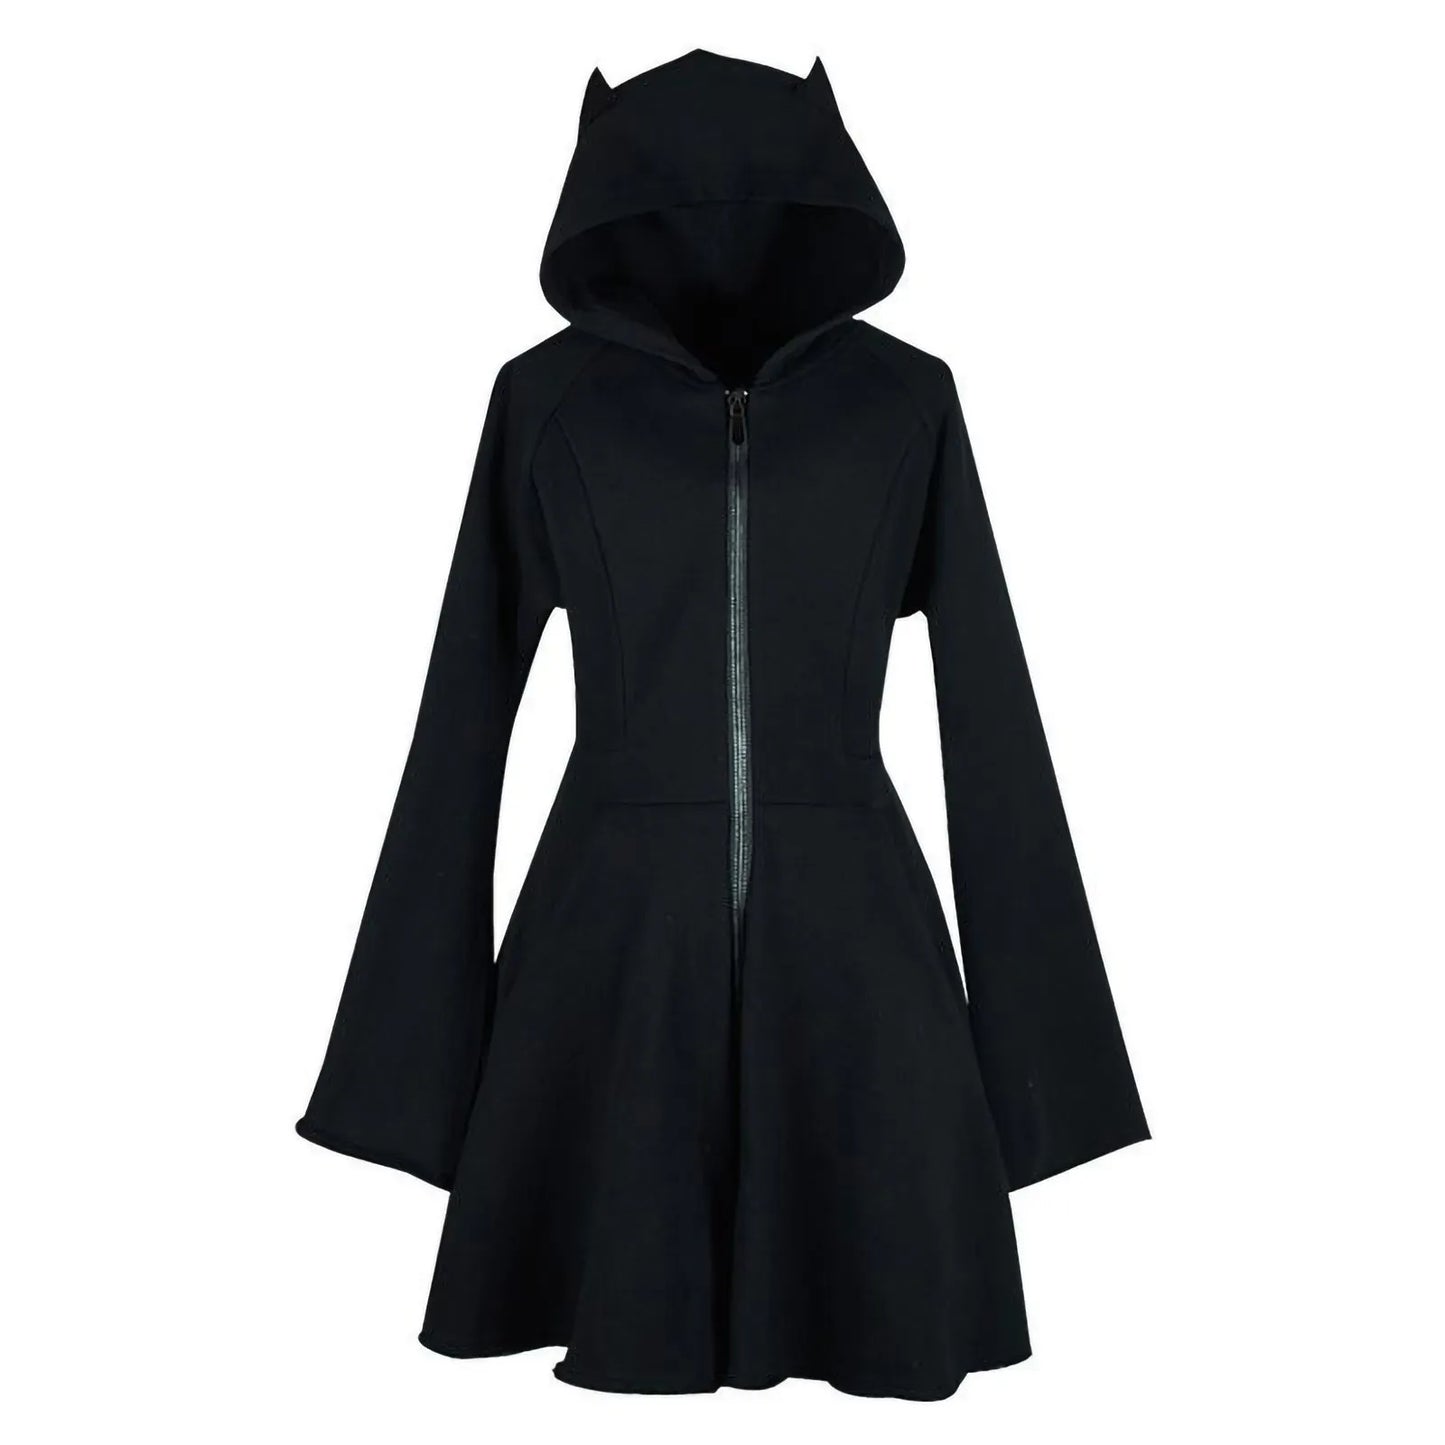 Y2k Vintage Hoodie For Women Goth Cat Ear Black Sweatshirt Solid Long Hoodie Dress Long Sleeve Slim Hoodie With Zipper Autumn